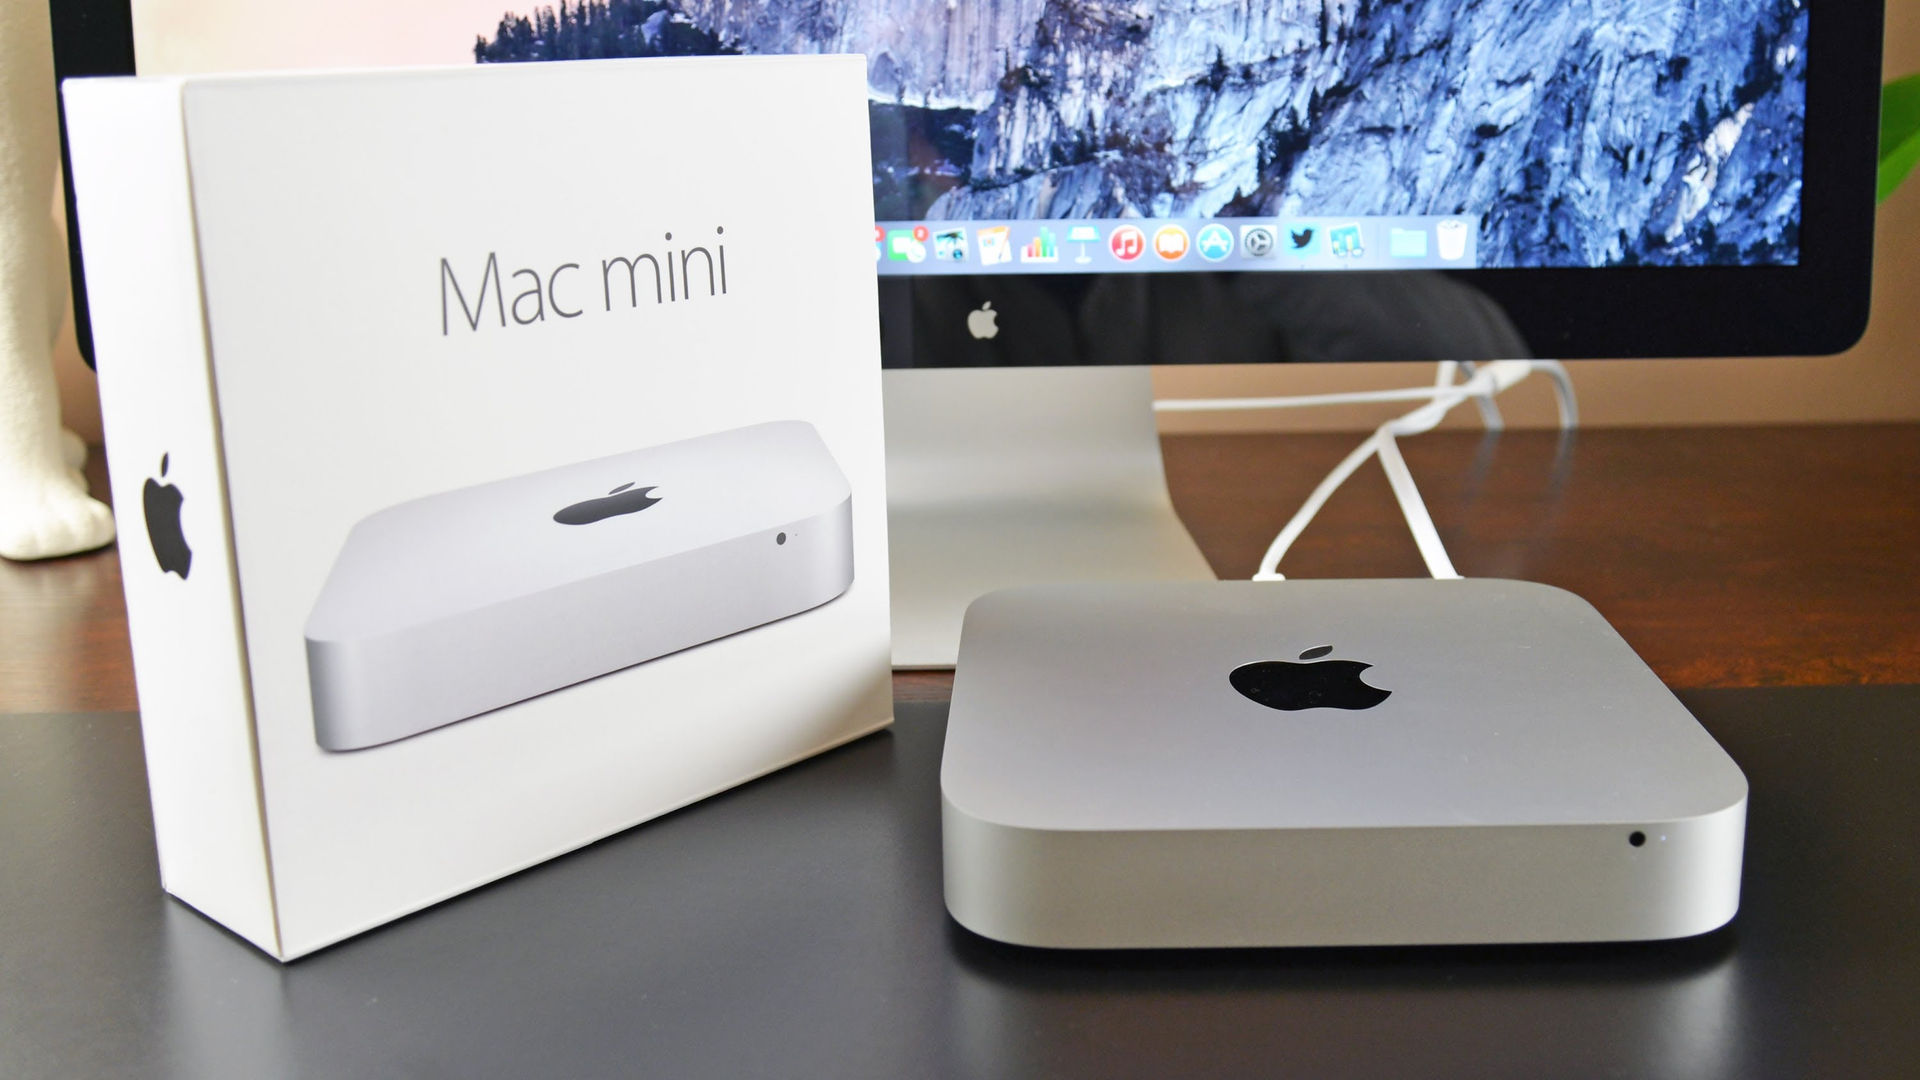 Mac mini sẽ được nâng cấp hướng tới người dùng chuyên nghiệp.